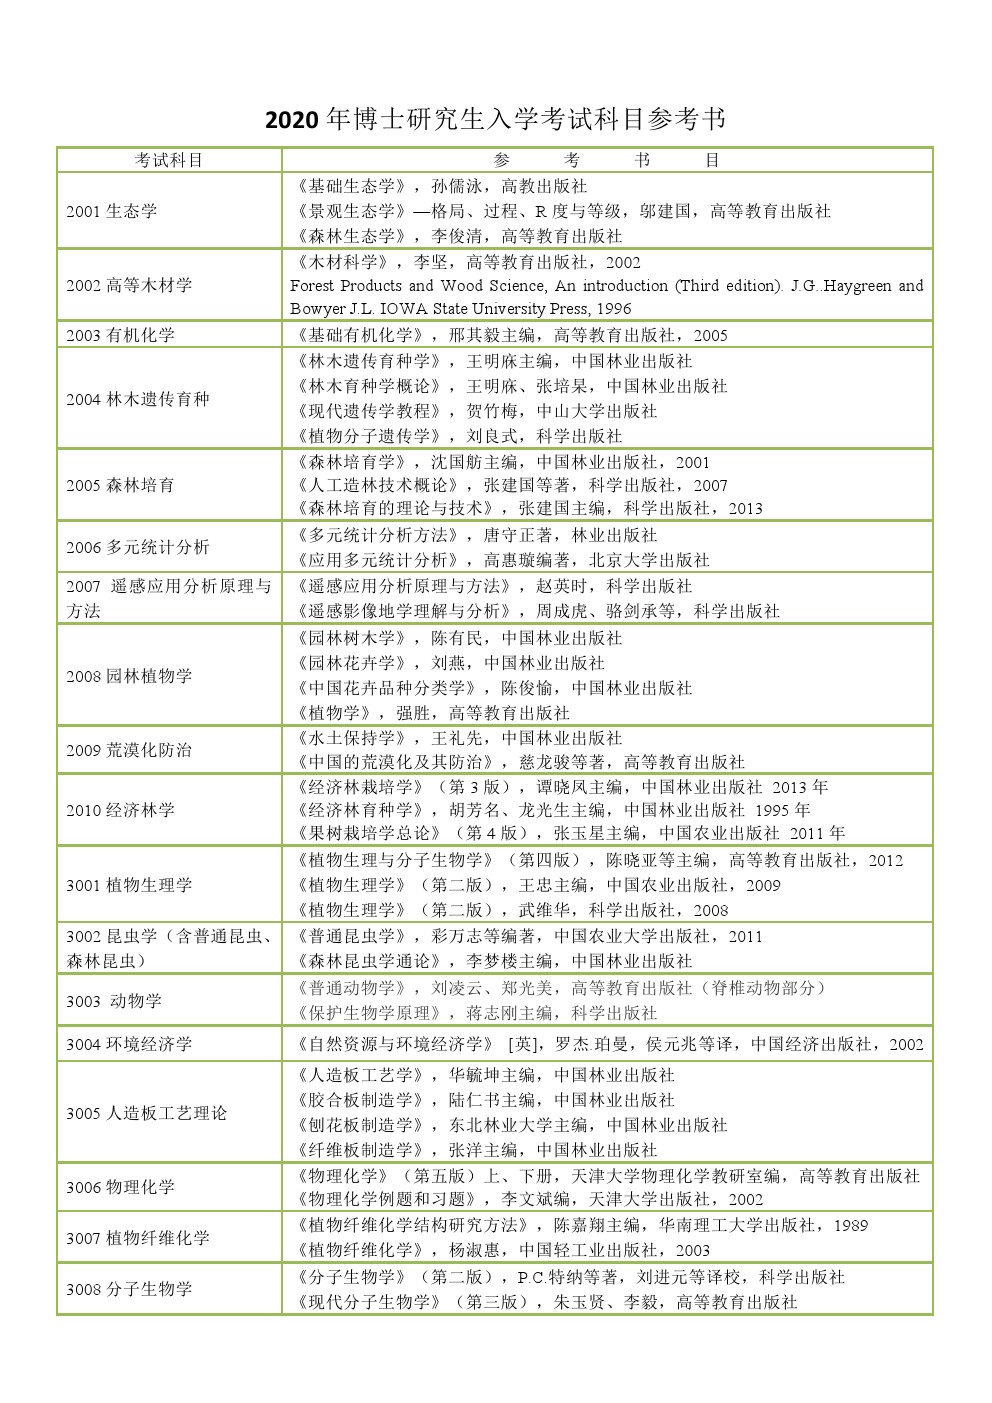 中国林业科学研究院2020年博士招生入学考试大纲及考博参考书